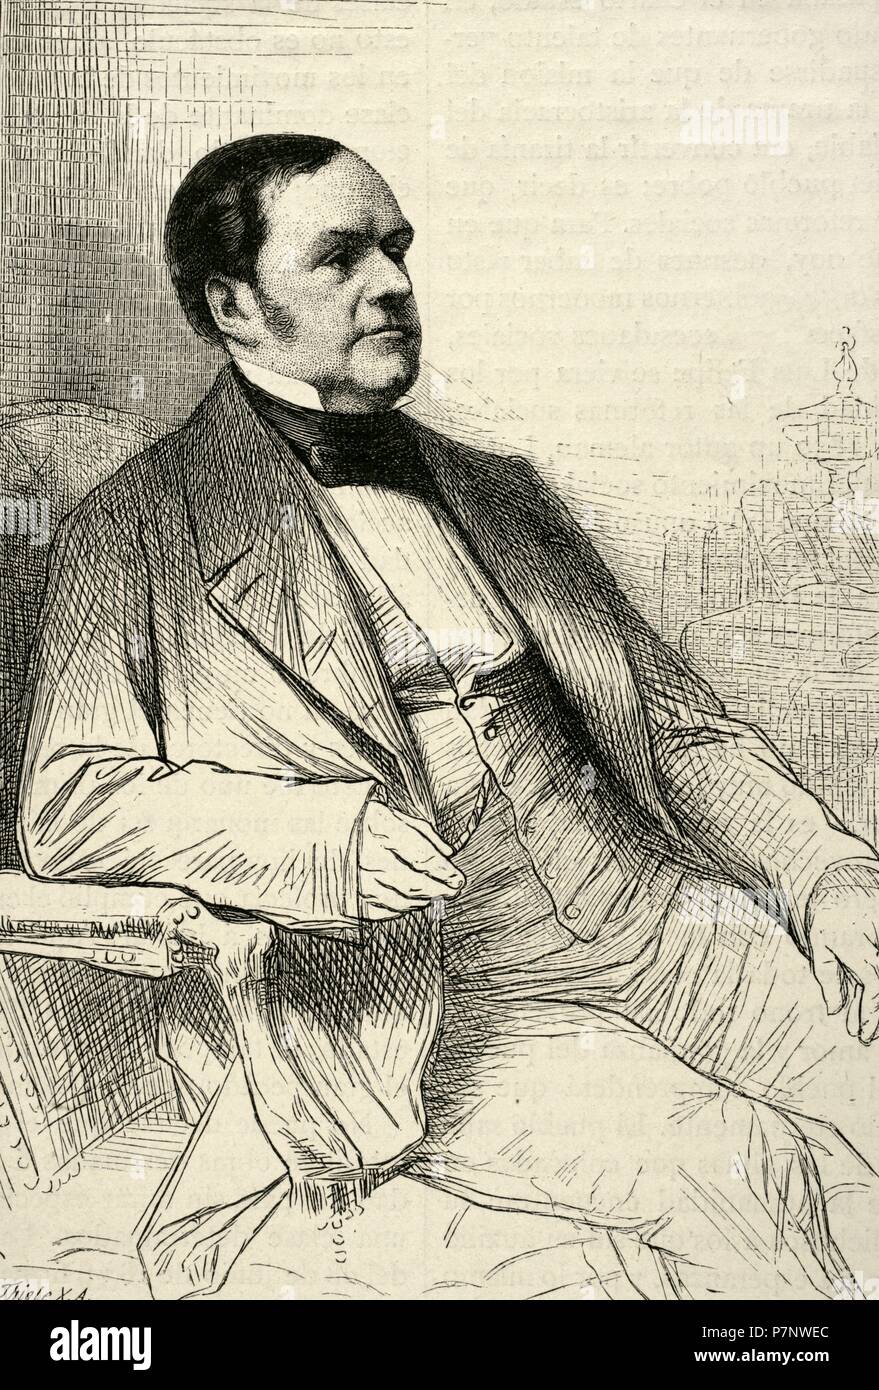 Graf Charles Marie Tanneguy Duchatel (1803-1867). Französischer Politiker. Porträt. Kupferstich von Thiele. "Historia de Francia", 1881. Stockfoto